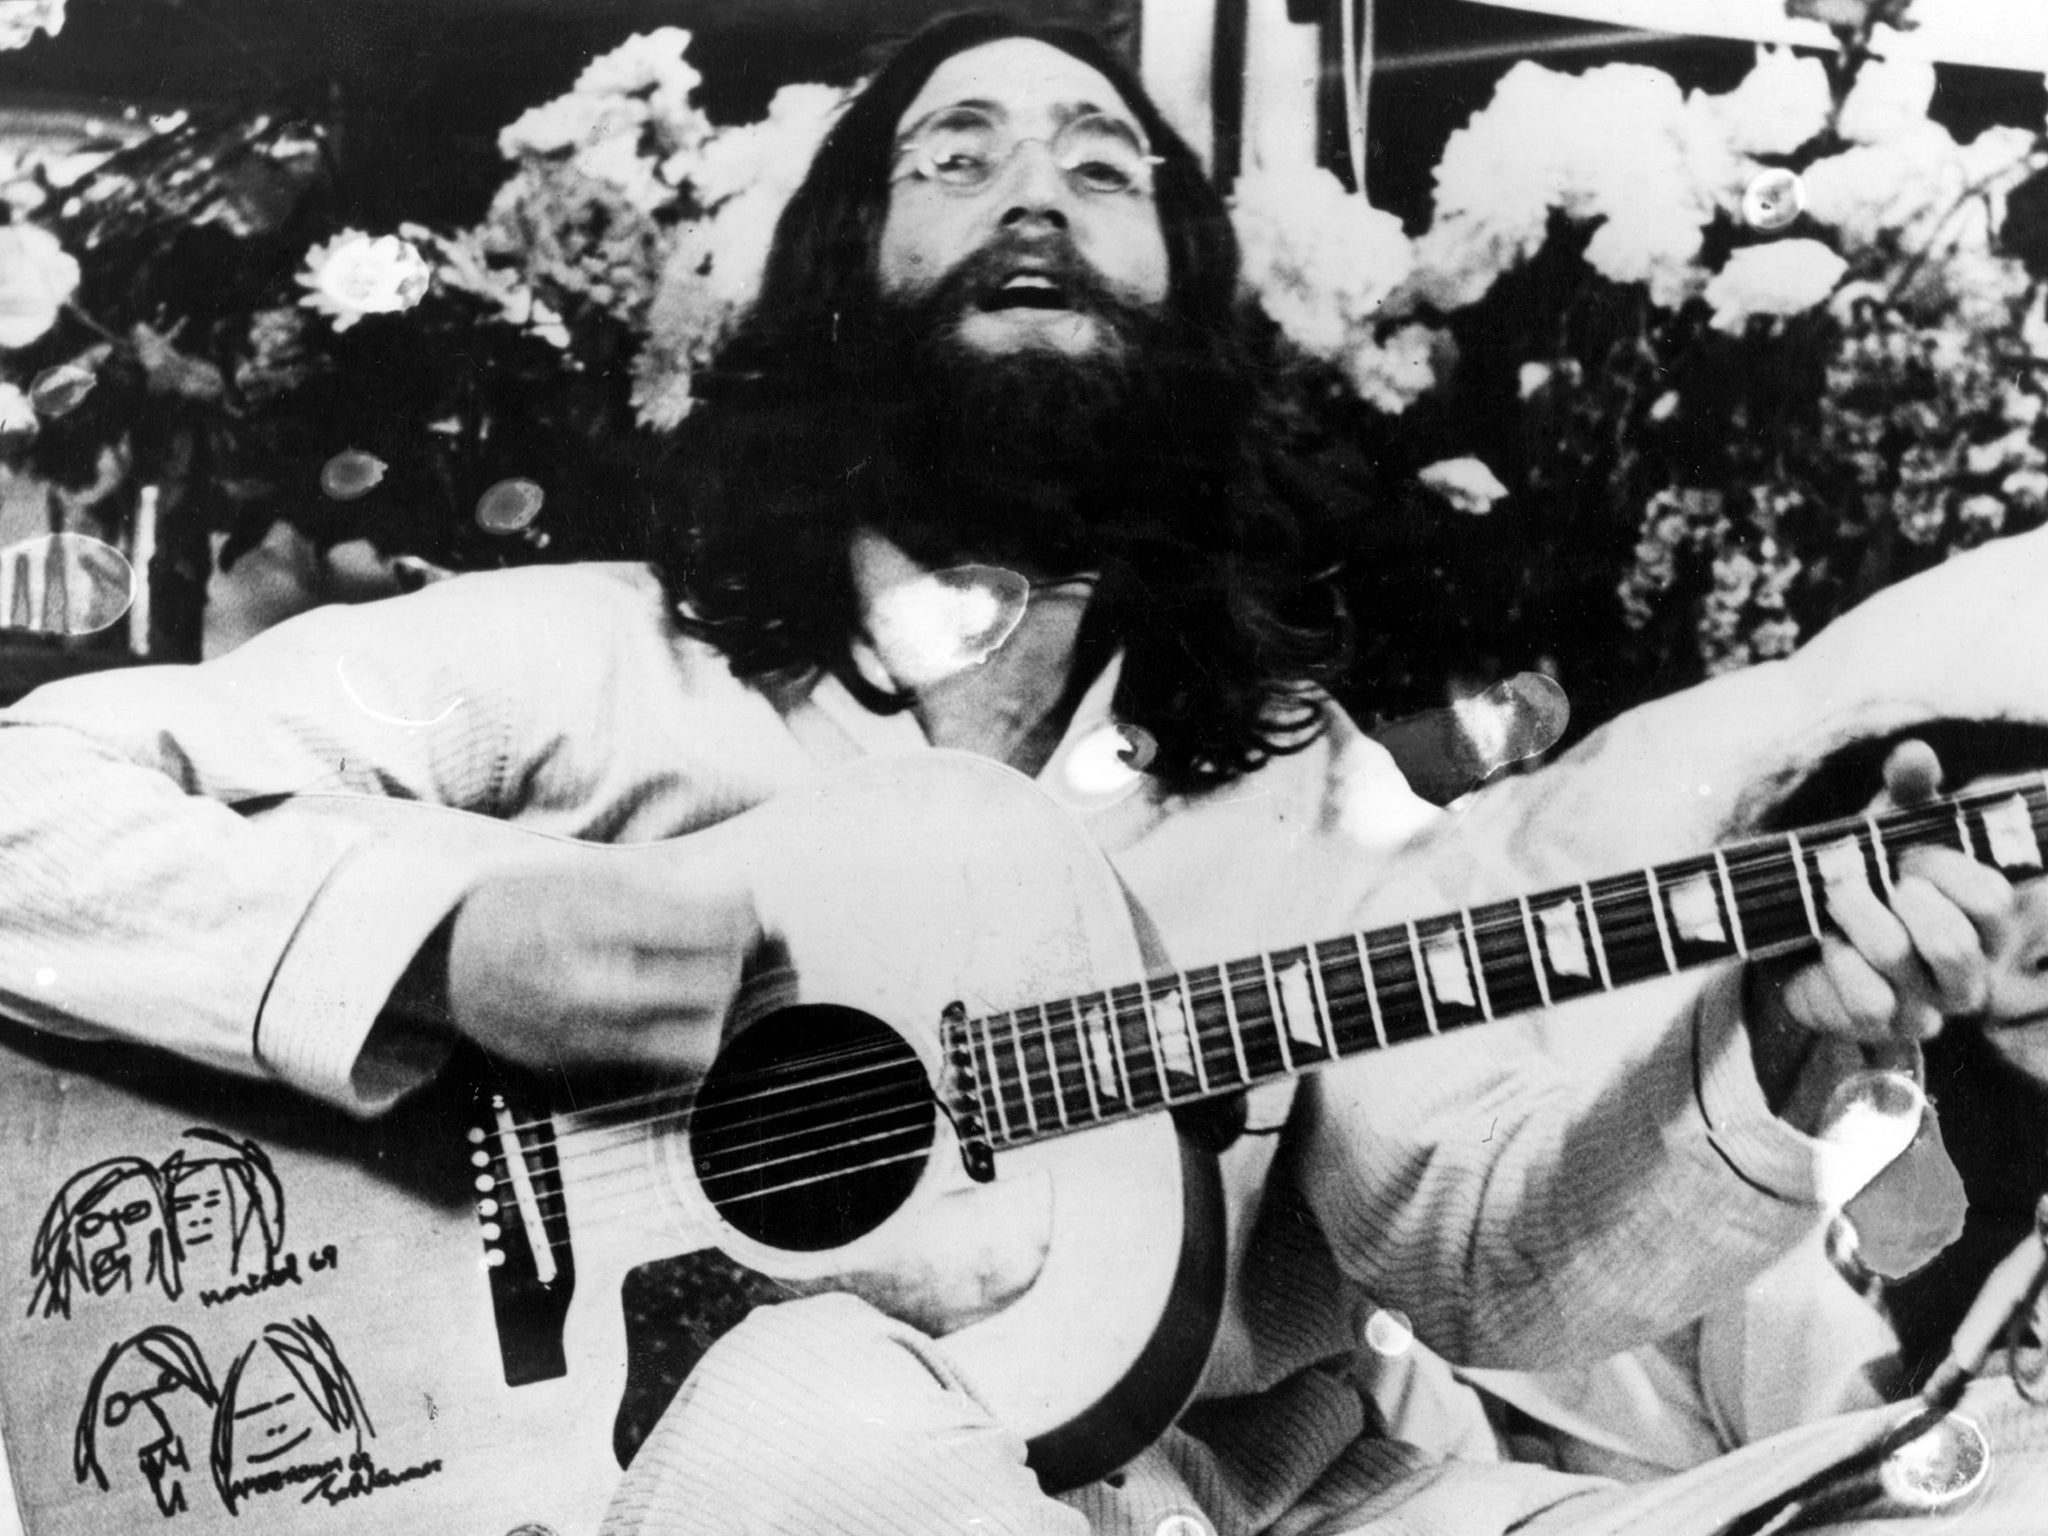 John Lennon sings in Canada in 1969